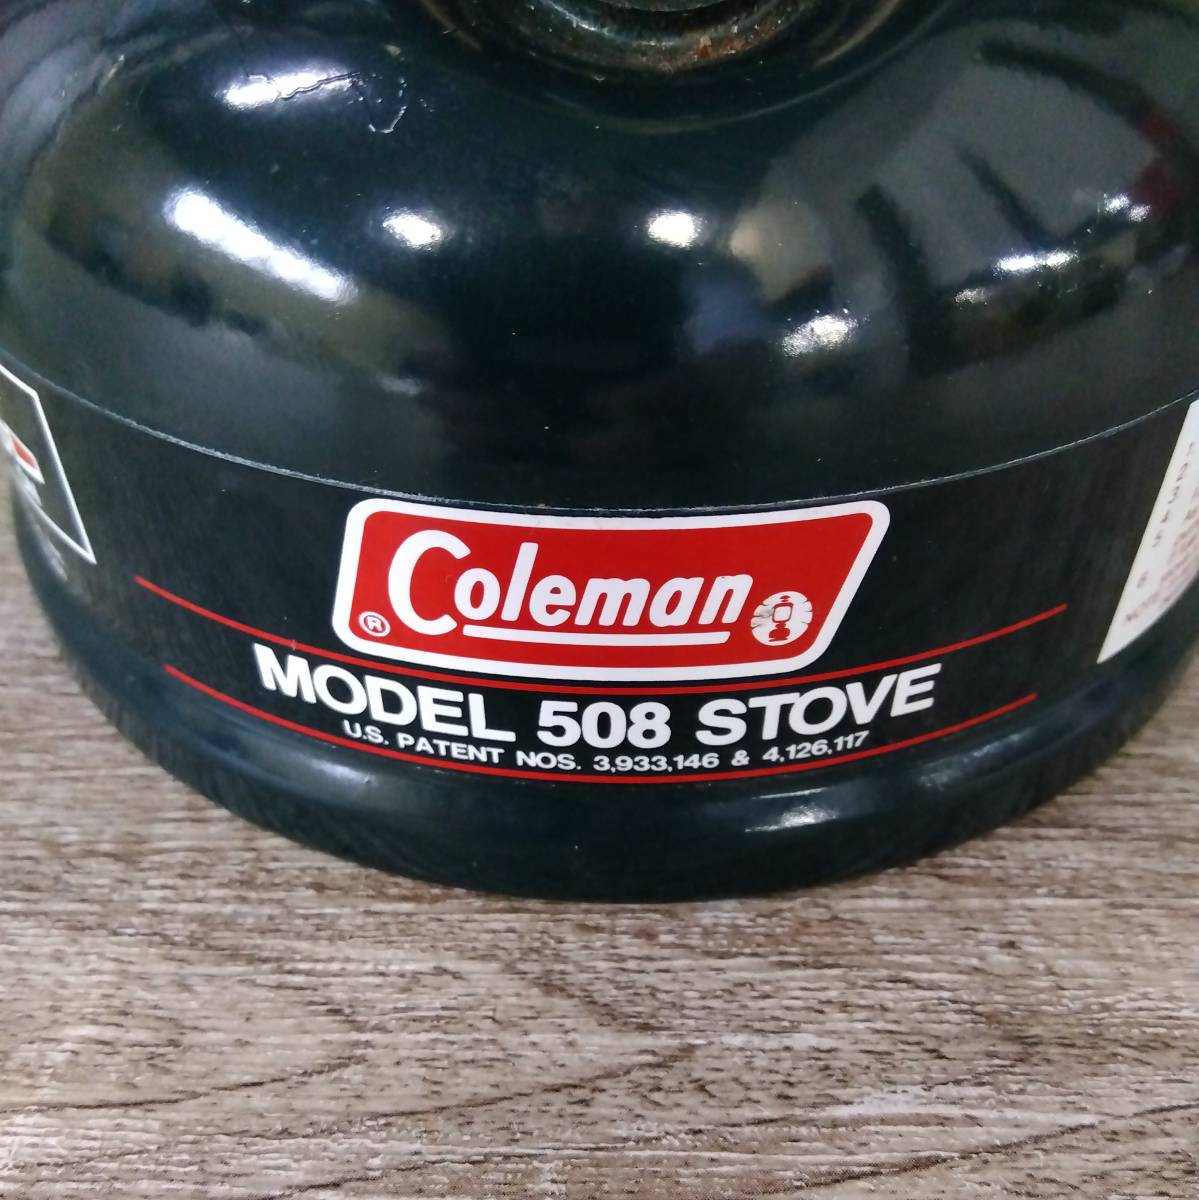 コールマン MODEL 508 STOVE 90年3月製造 coleman ストーブ 調理器具 アウトドア キャンプ シングル バーナー ガソリン tmc02053410_画像6